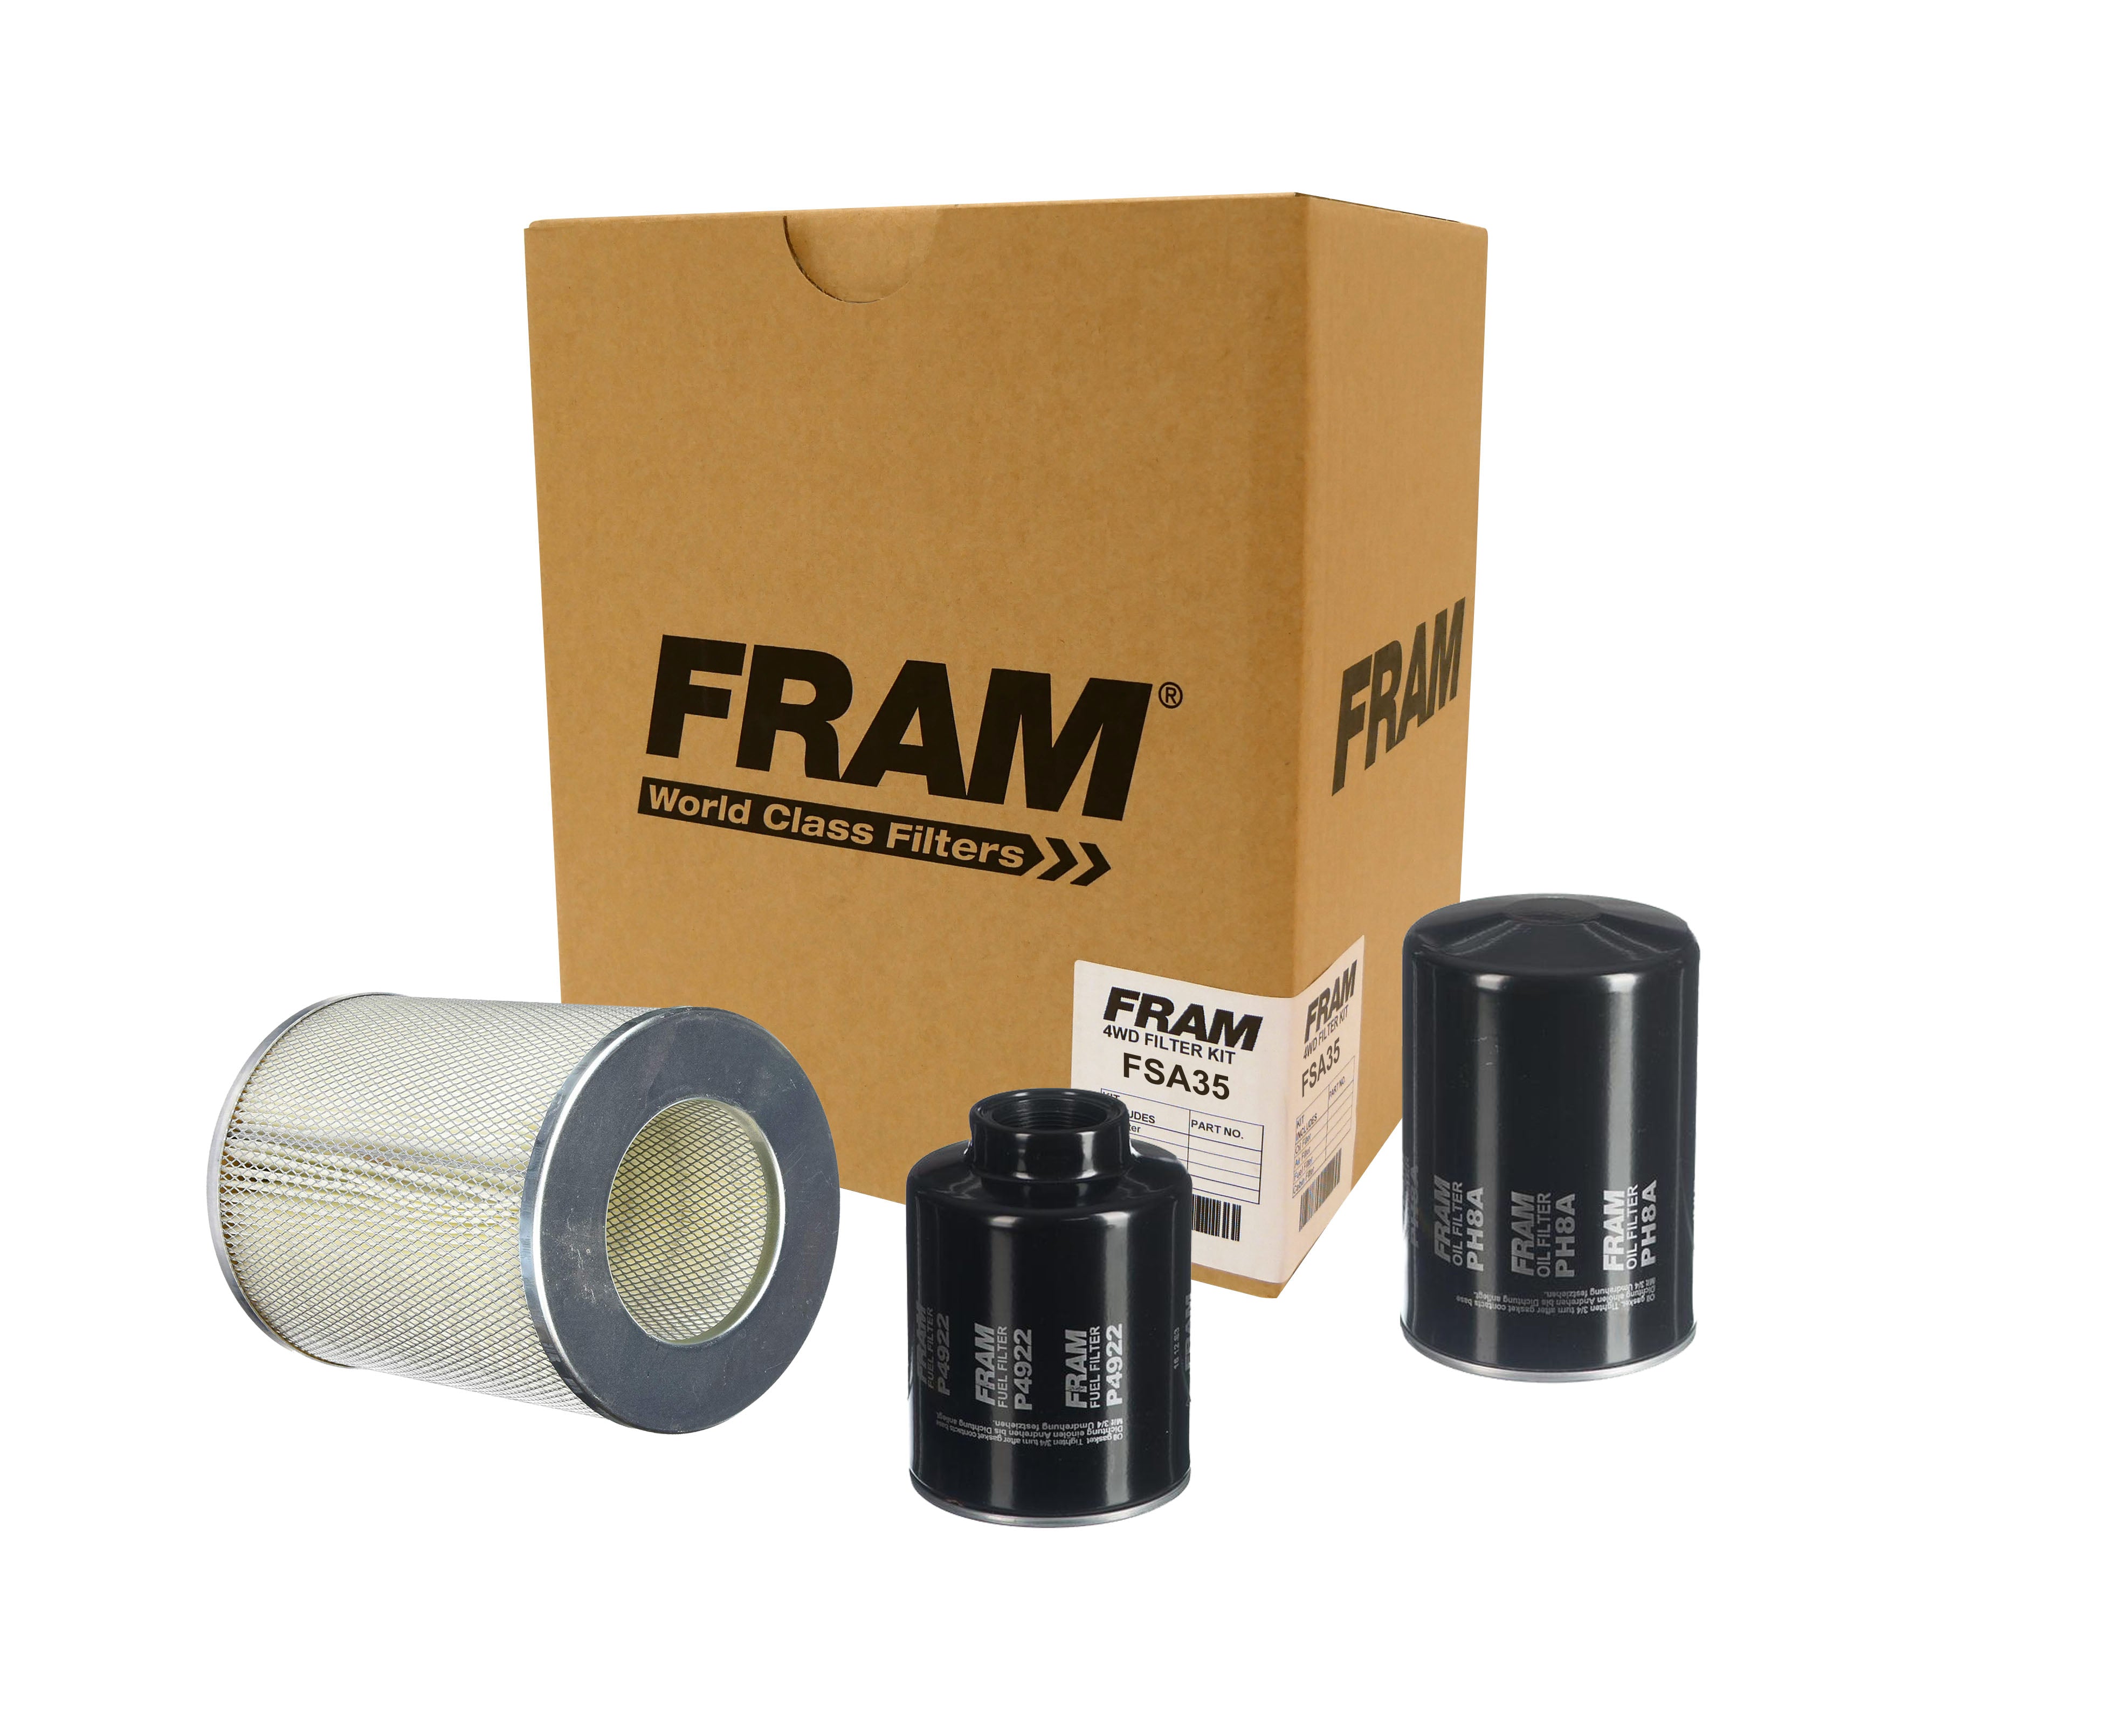 FRAM 4wd Filter Kit for Toyota Hilux LN86, 106, 107 & 111 10/88-../97 | FRAM